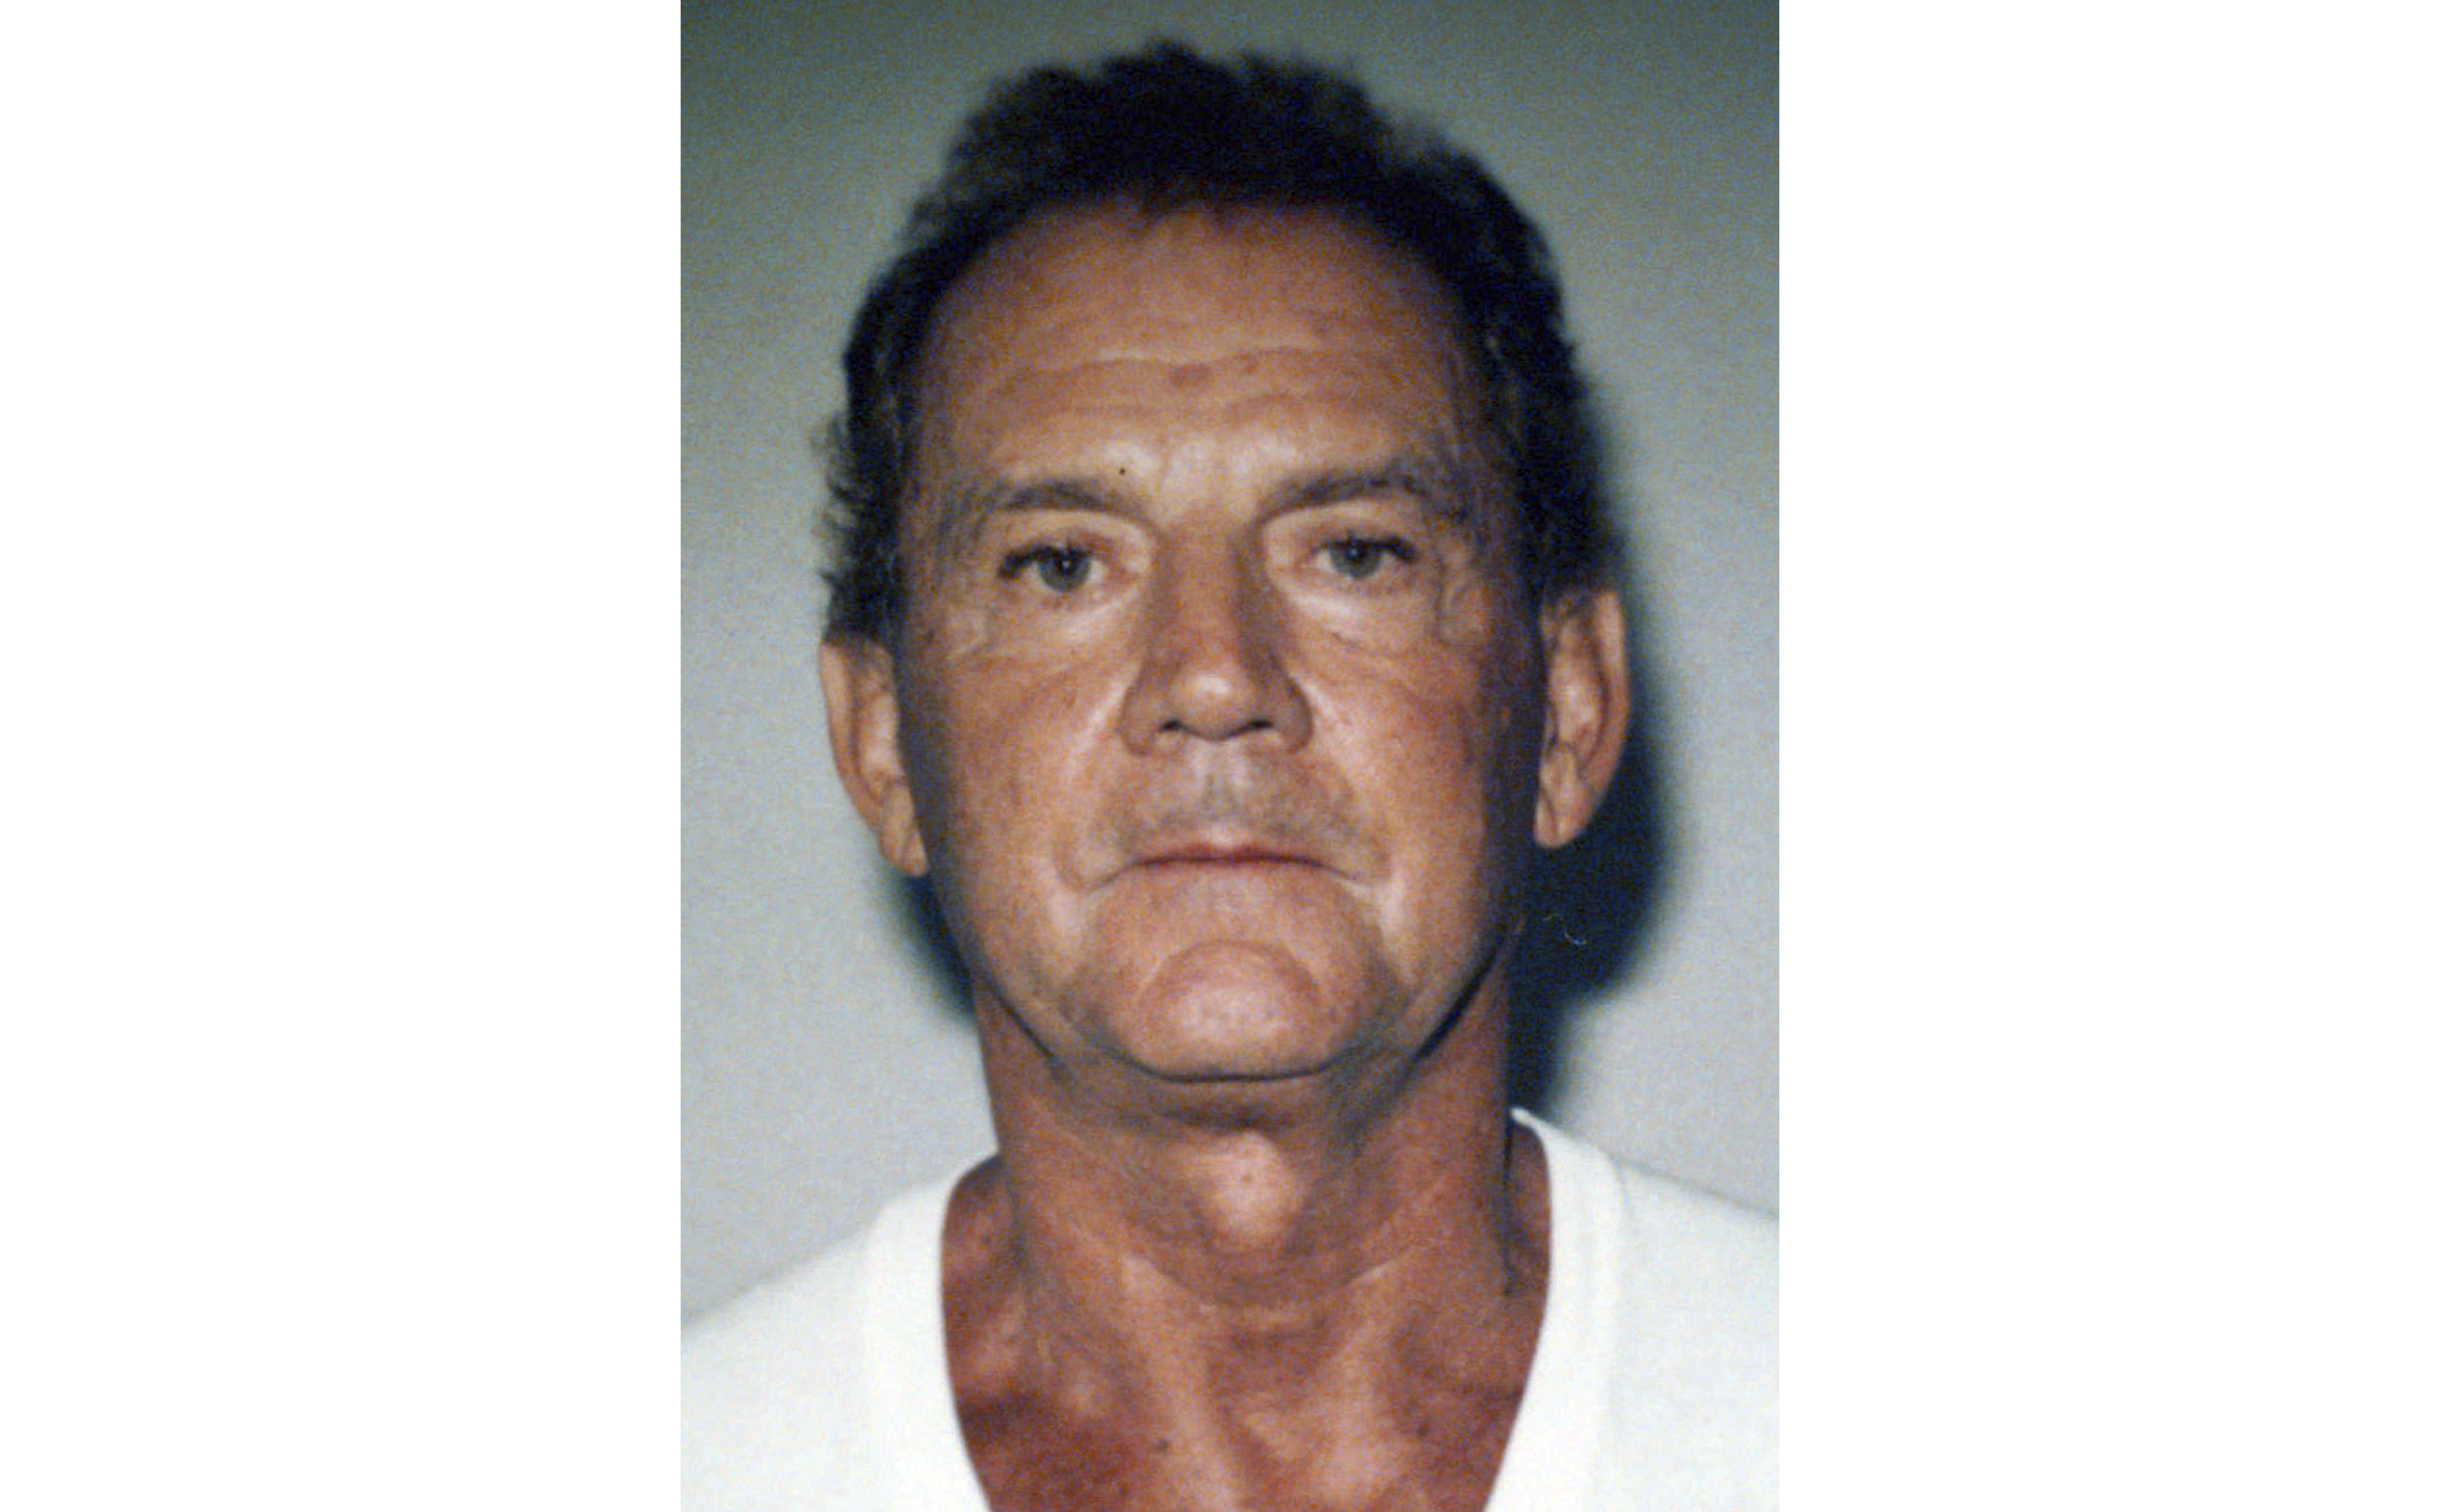 Exjefe de la mafia 'Cadillac Frank' Salemme muere en prisión a los 89 años